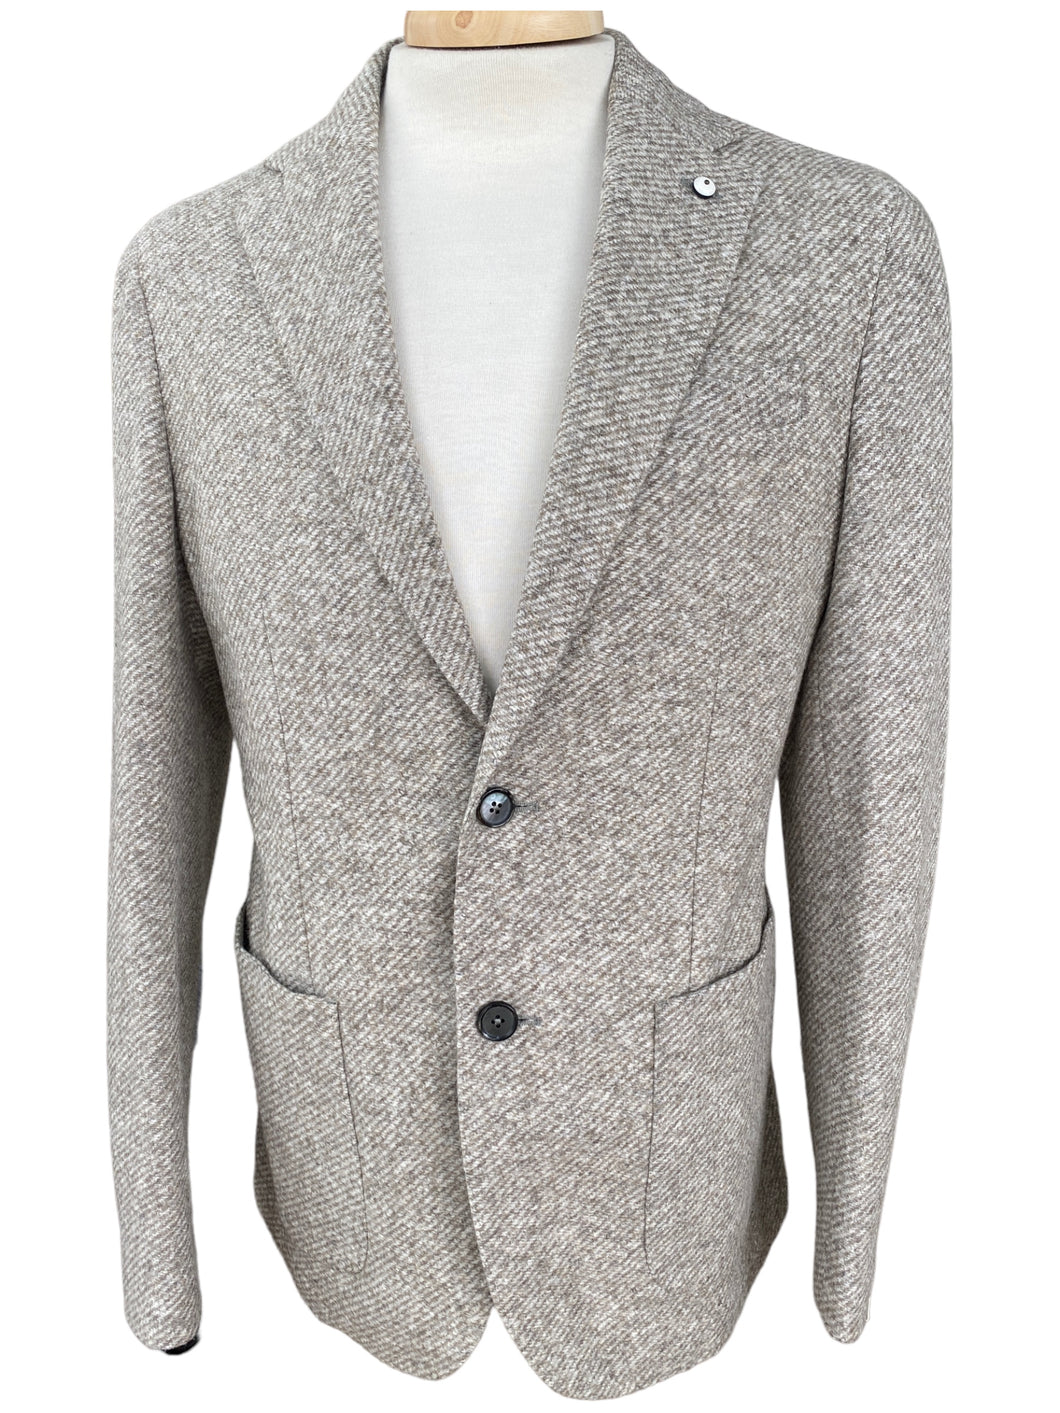 LBM Cotton Wool Blend Jacket Beige Tweed